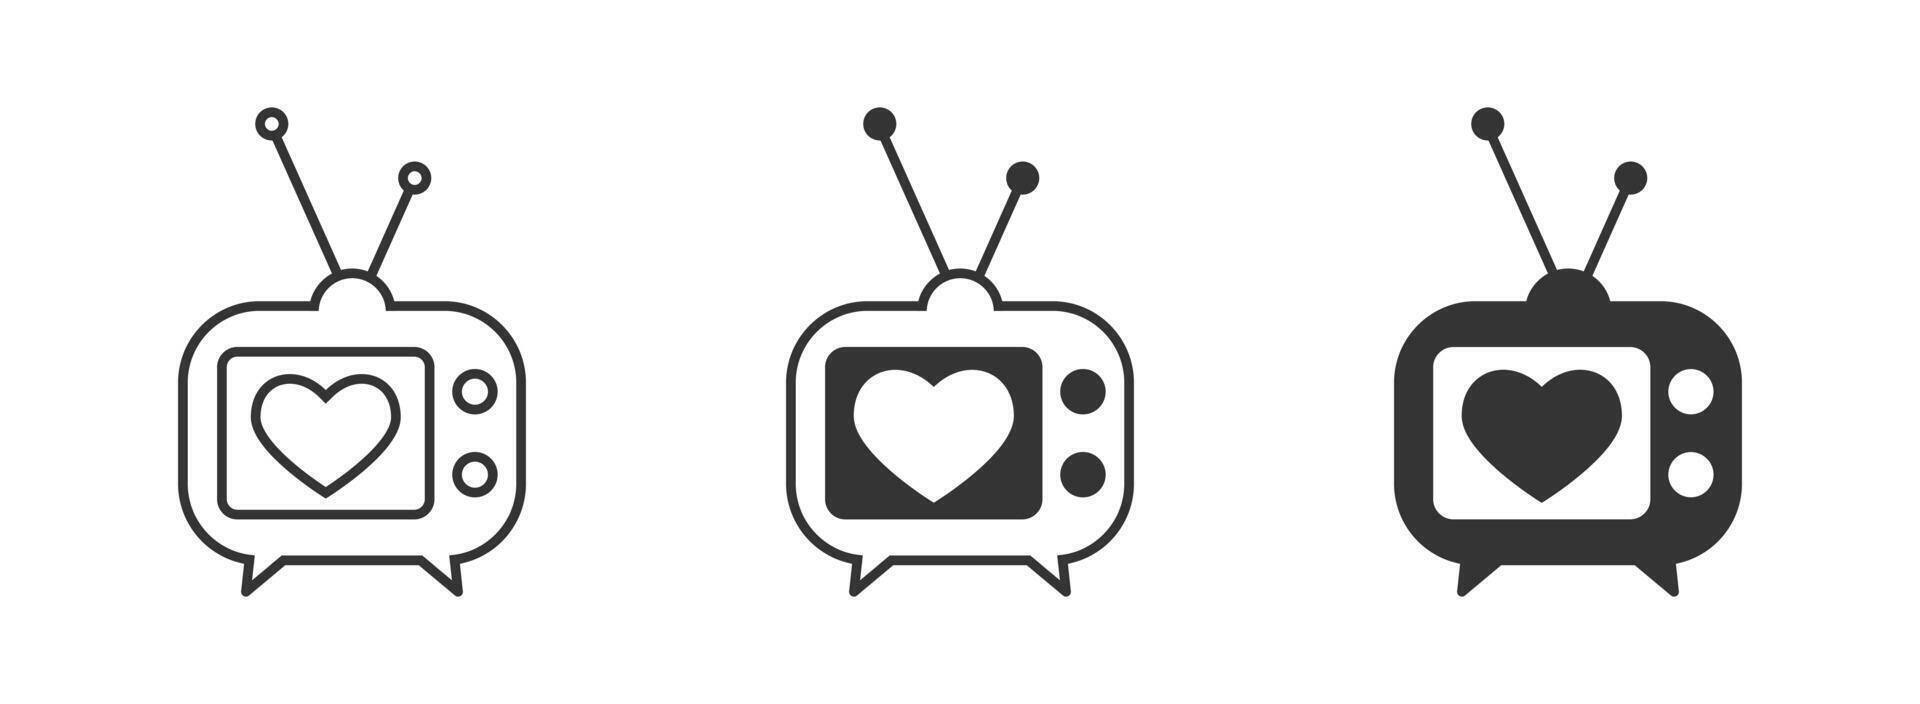 la télé icône avec une cœur symbole. vecteur illustration.